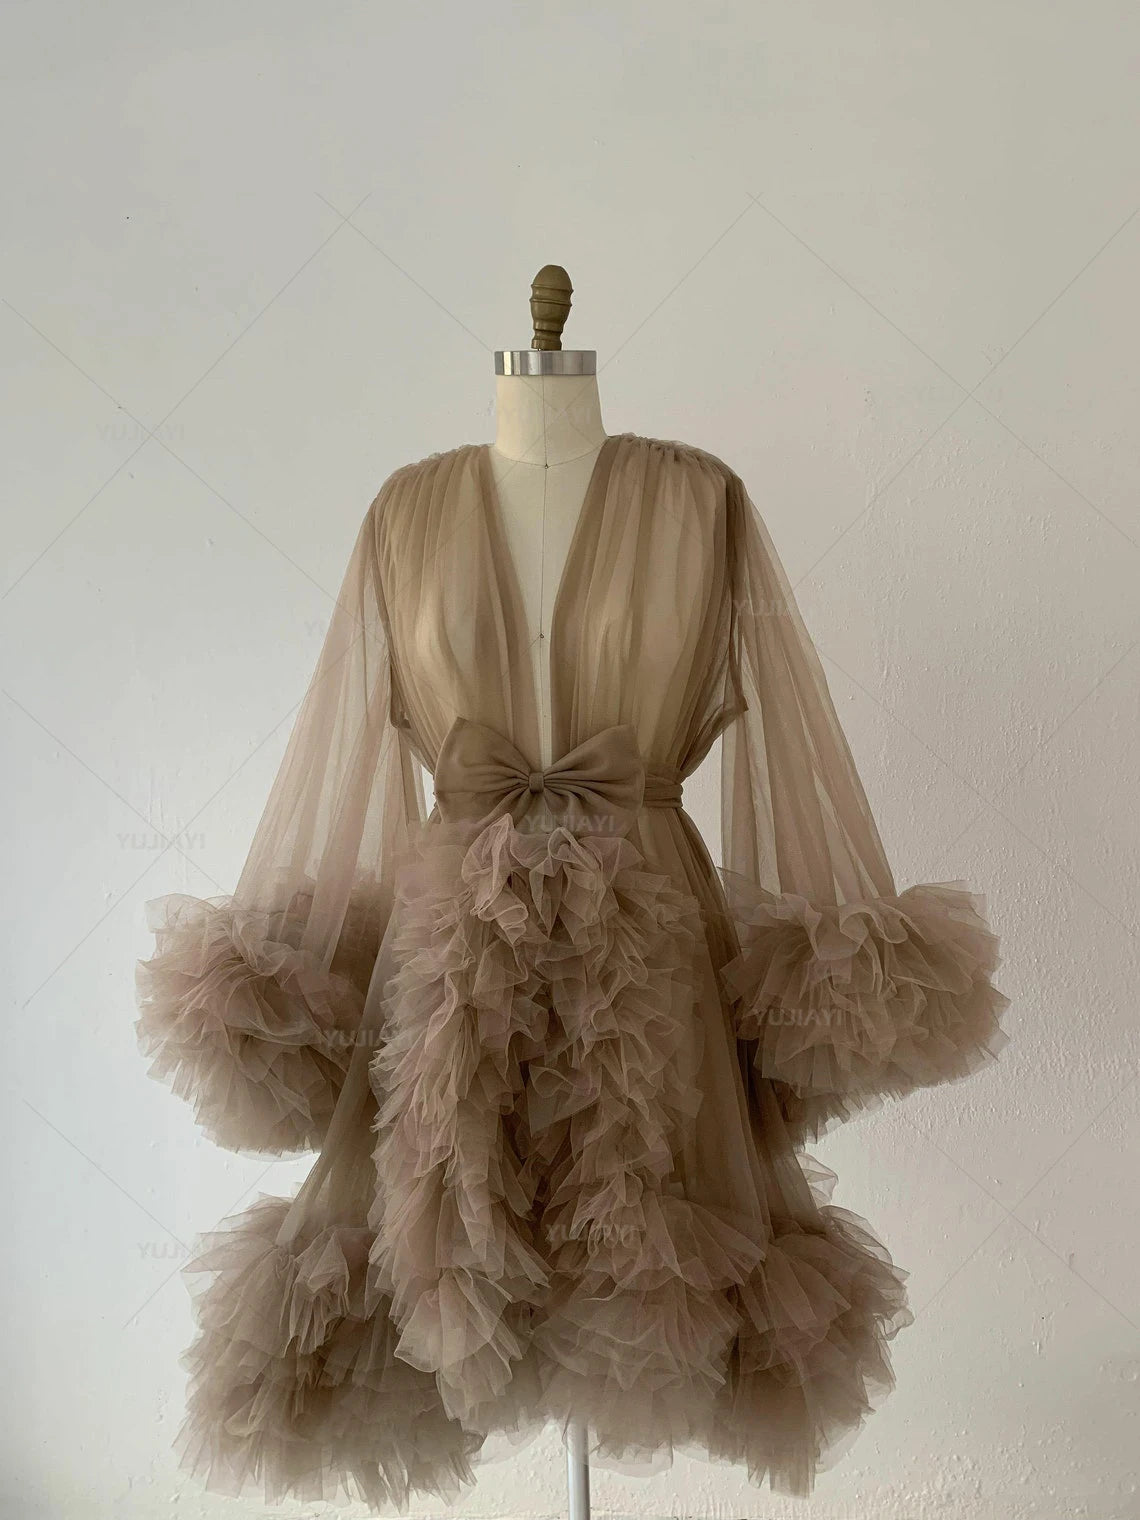 Motivat Elegant Tulle Ruffle Edge Short or Long Sleeve - Lovely Cape Cloak Dress Custom Size